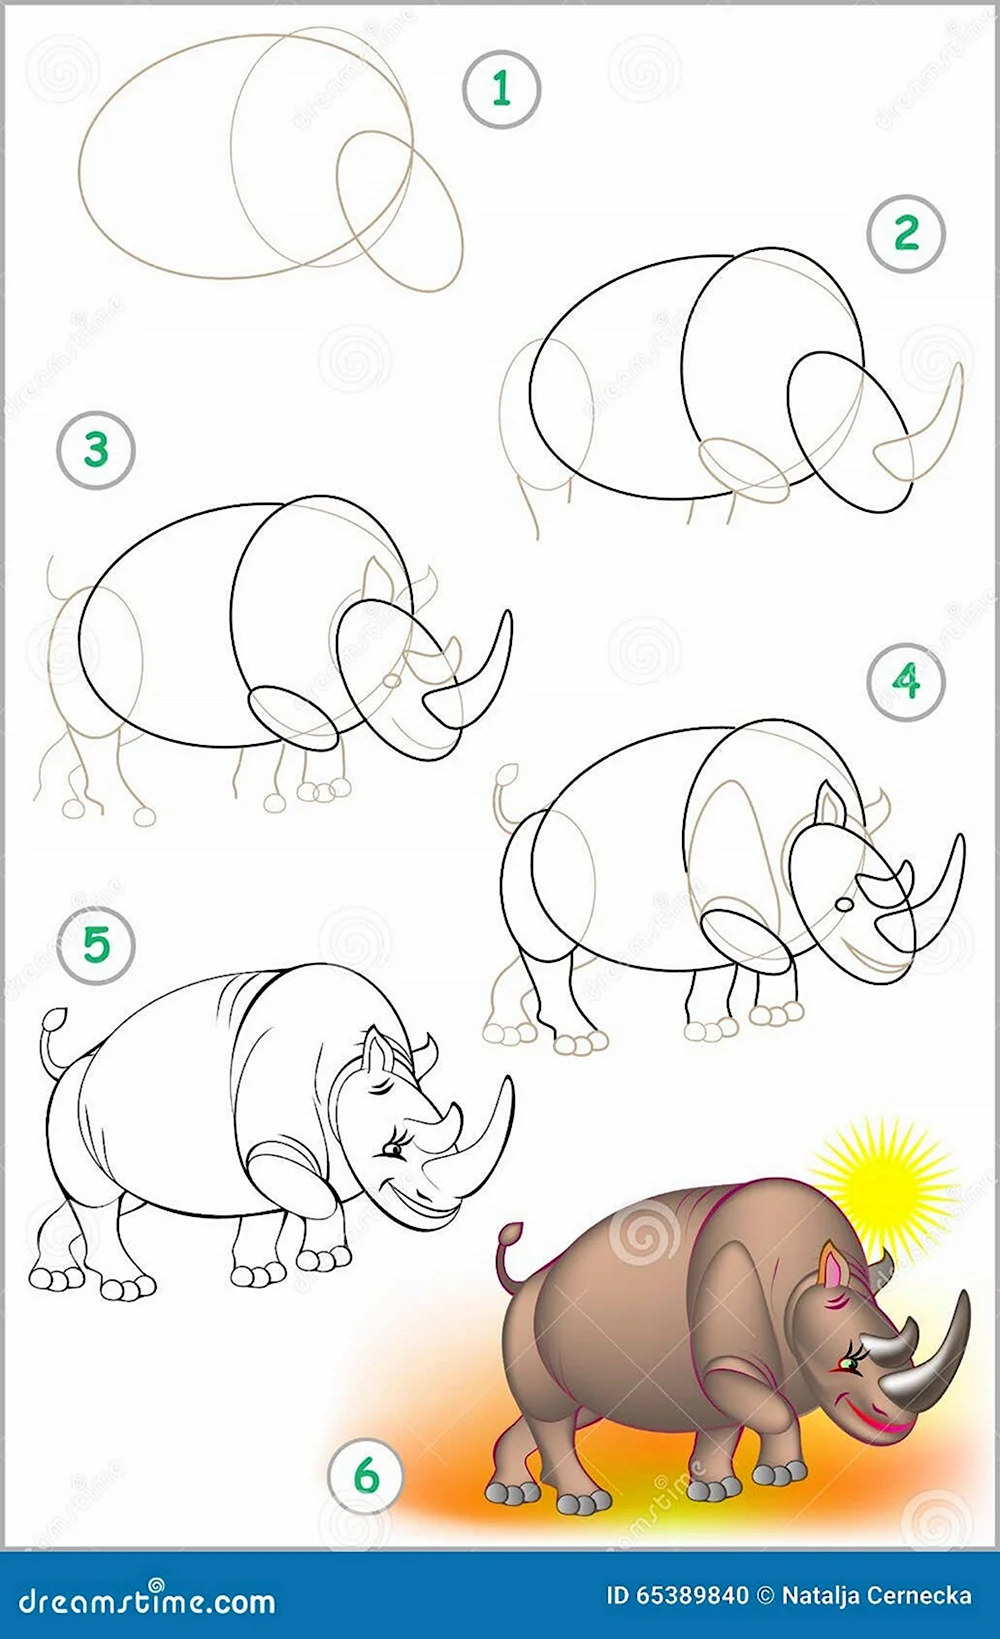 Поэтапное рисование носорога для детей